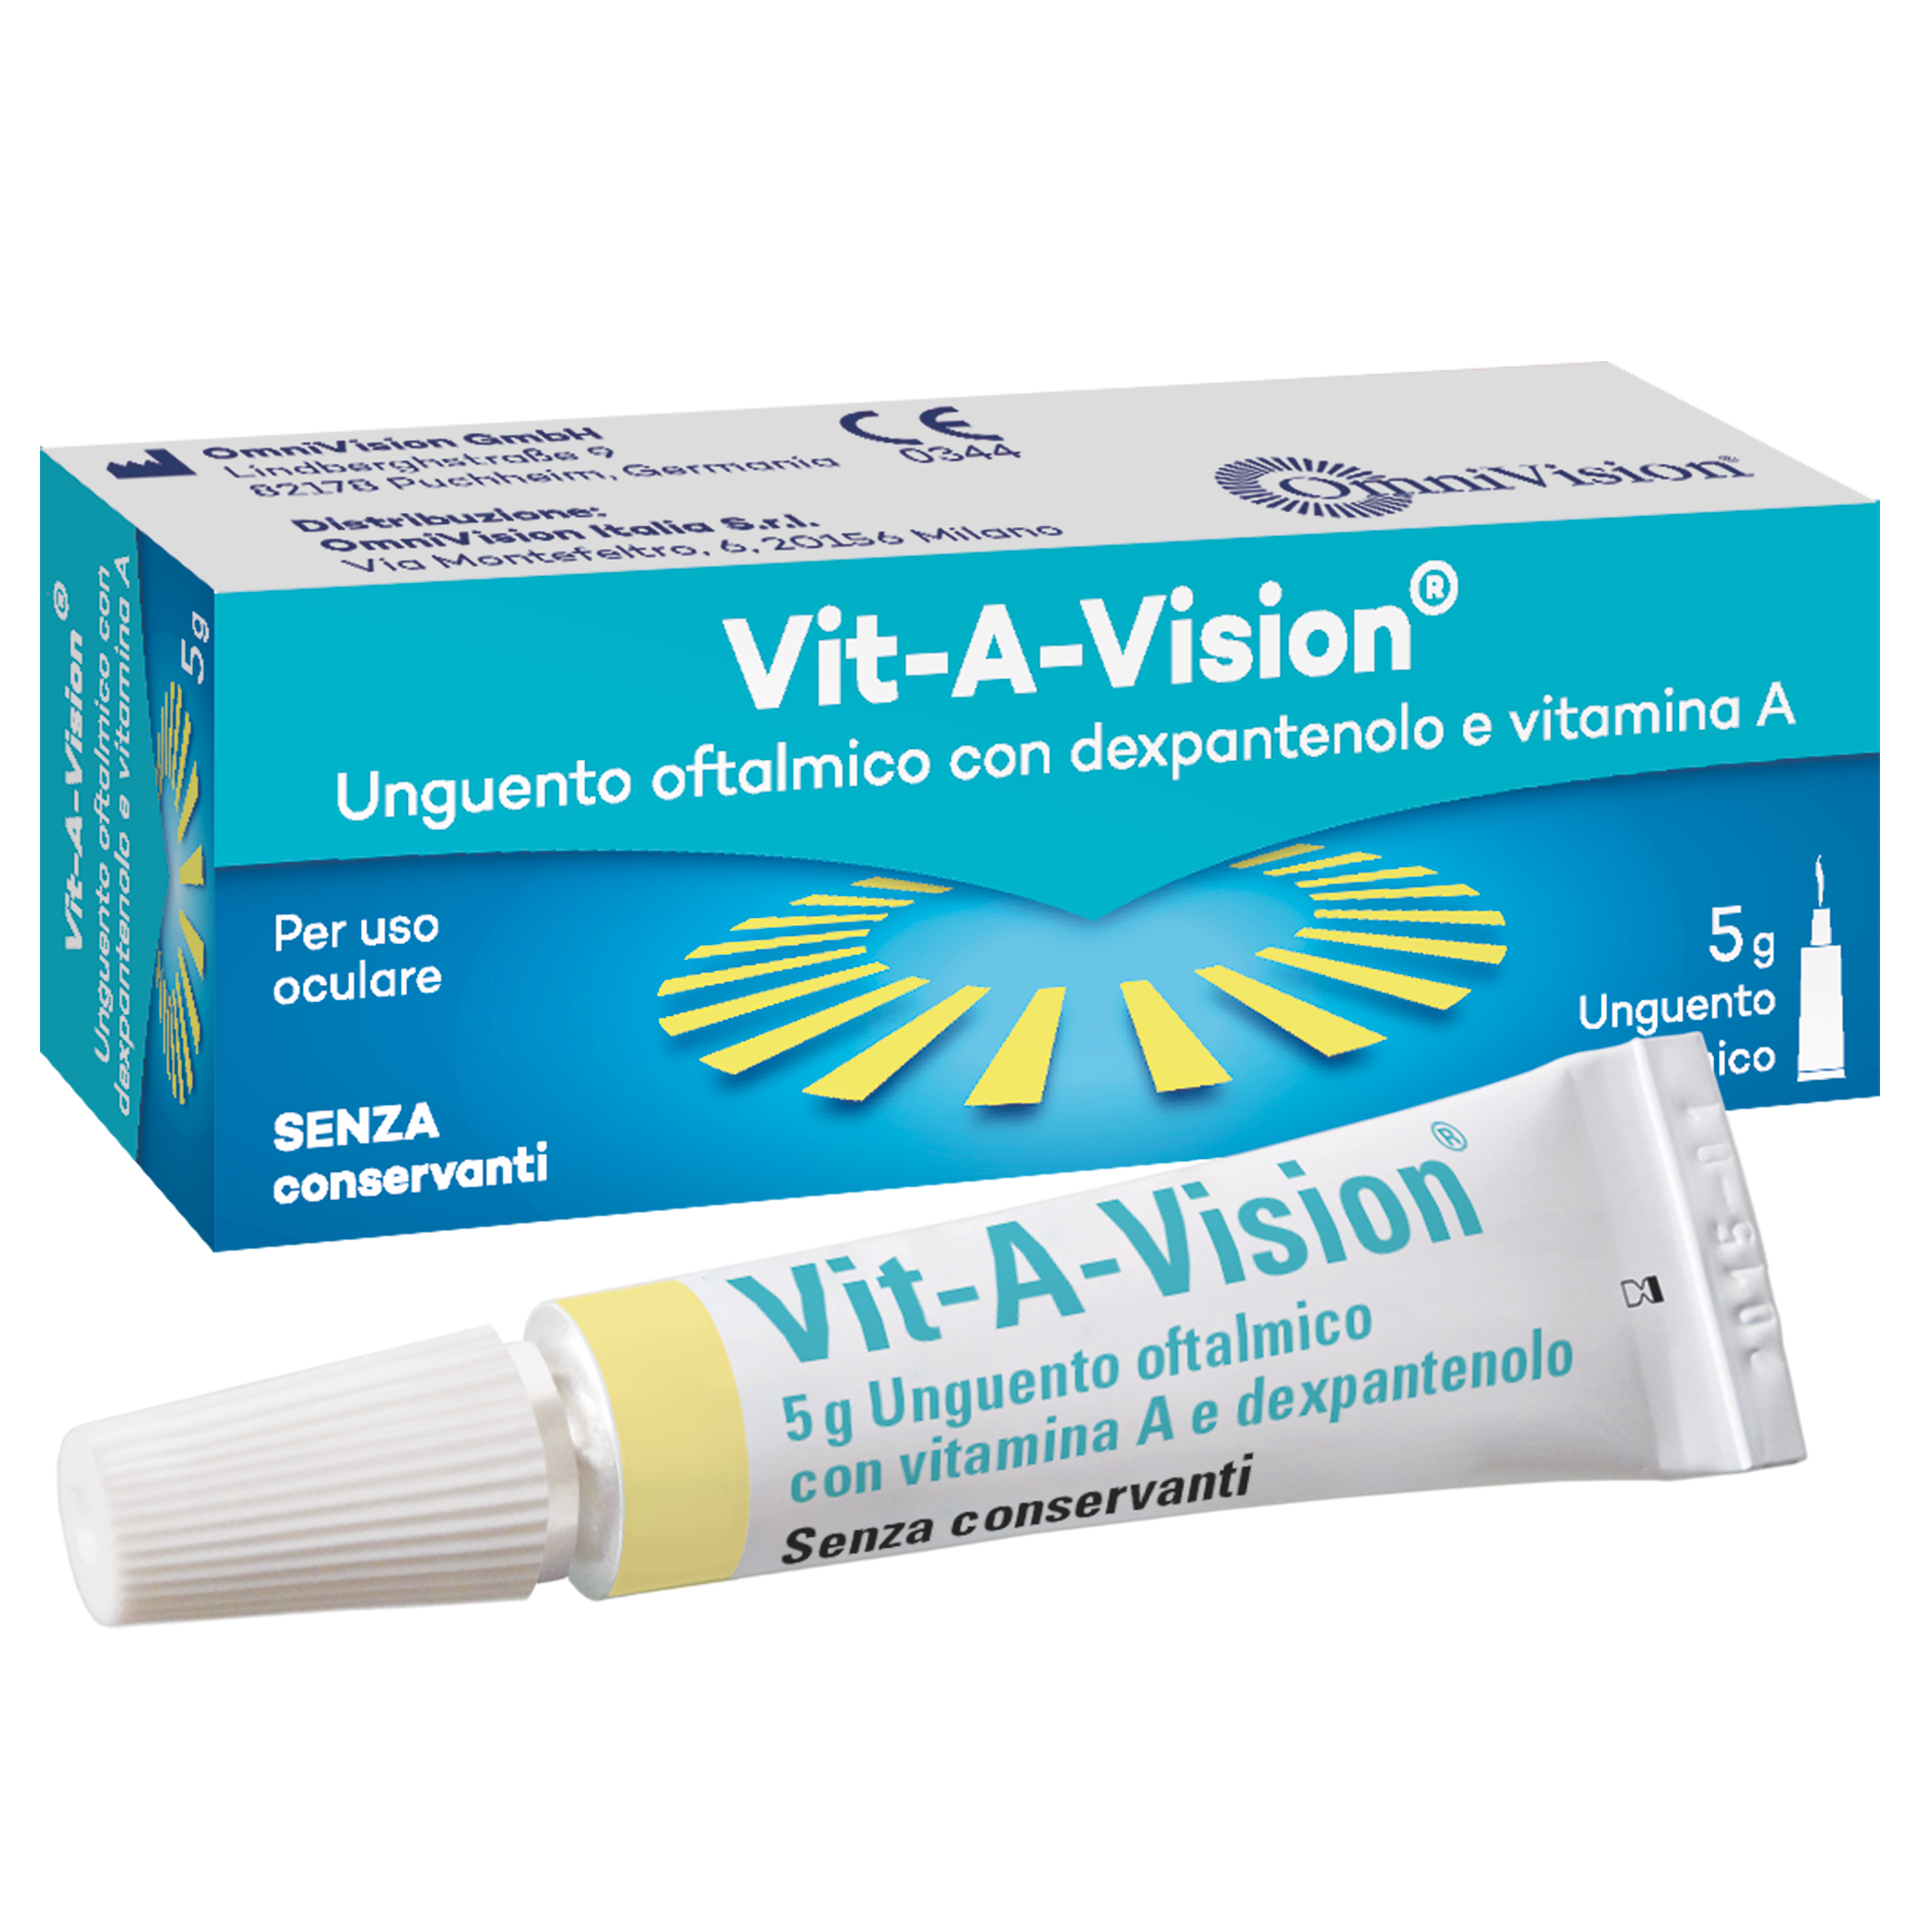 Vit-A-Vision®